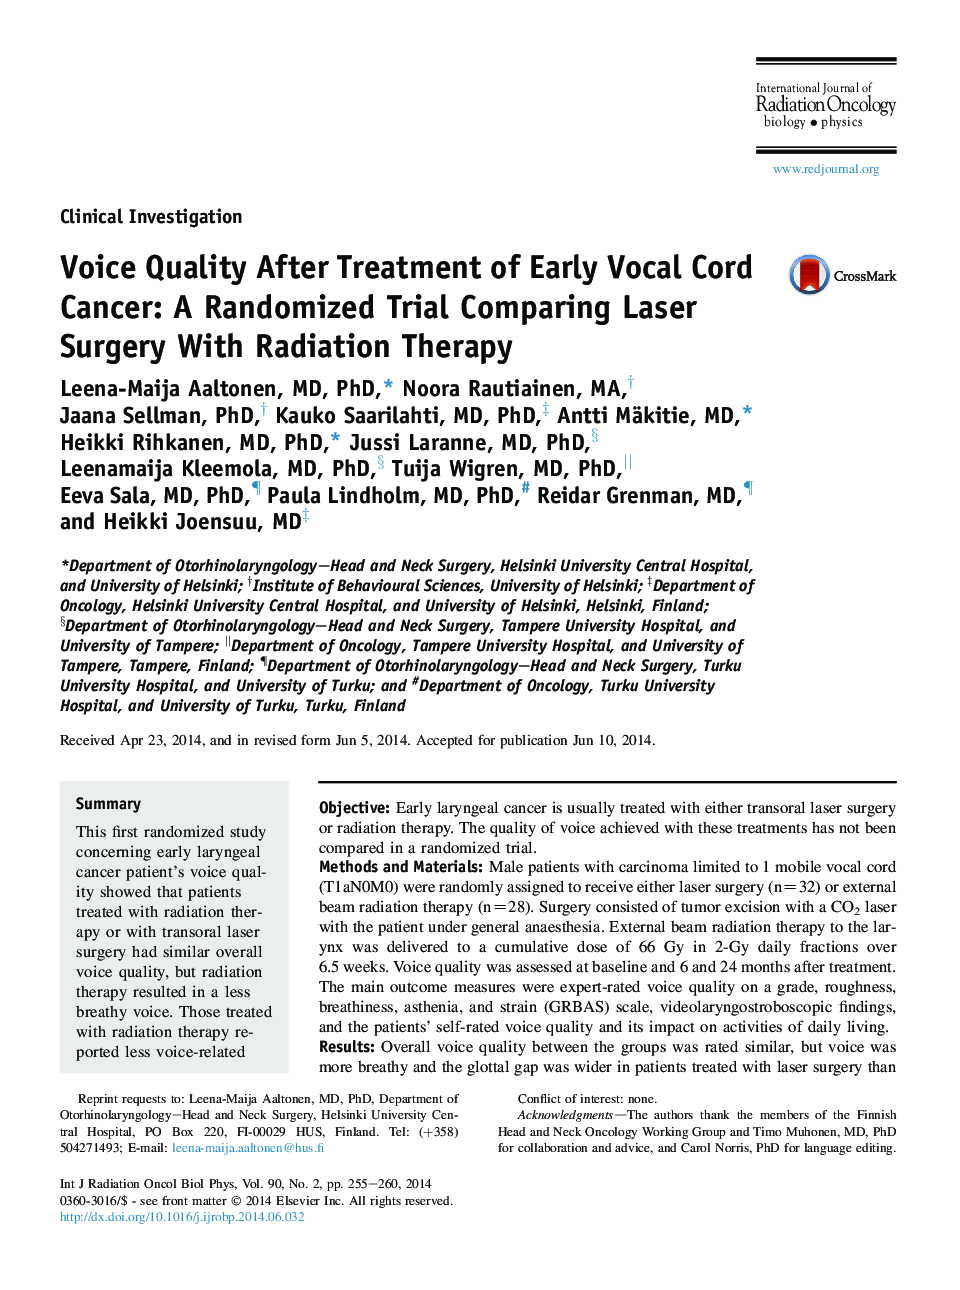 کیفیت صدا پس از درمان سرطان کبد زودهنگام: یک آزمایش تصادفی در مقایسه با جراحی لیزر با درمان رادیواکتیو 